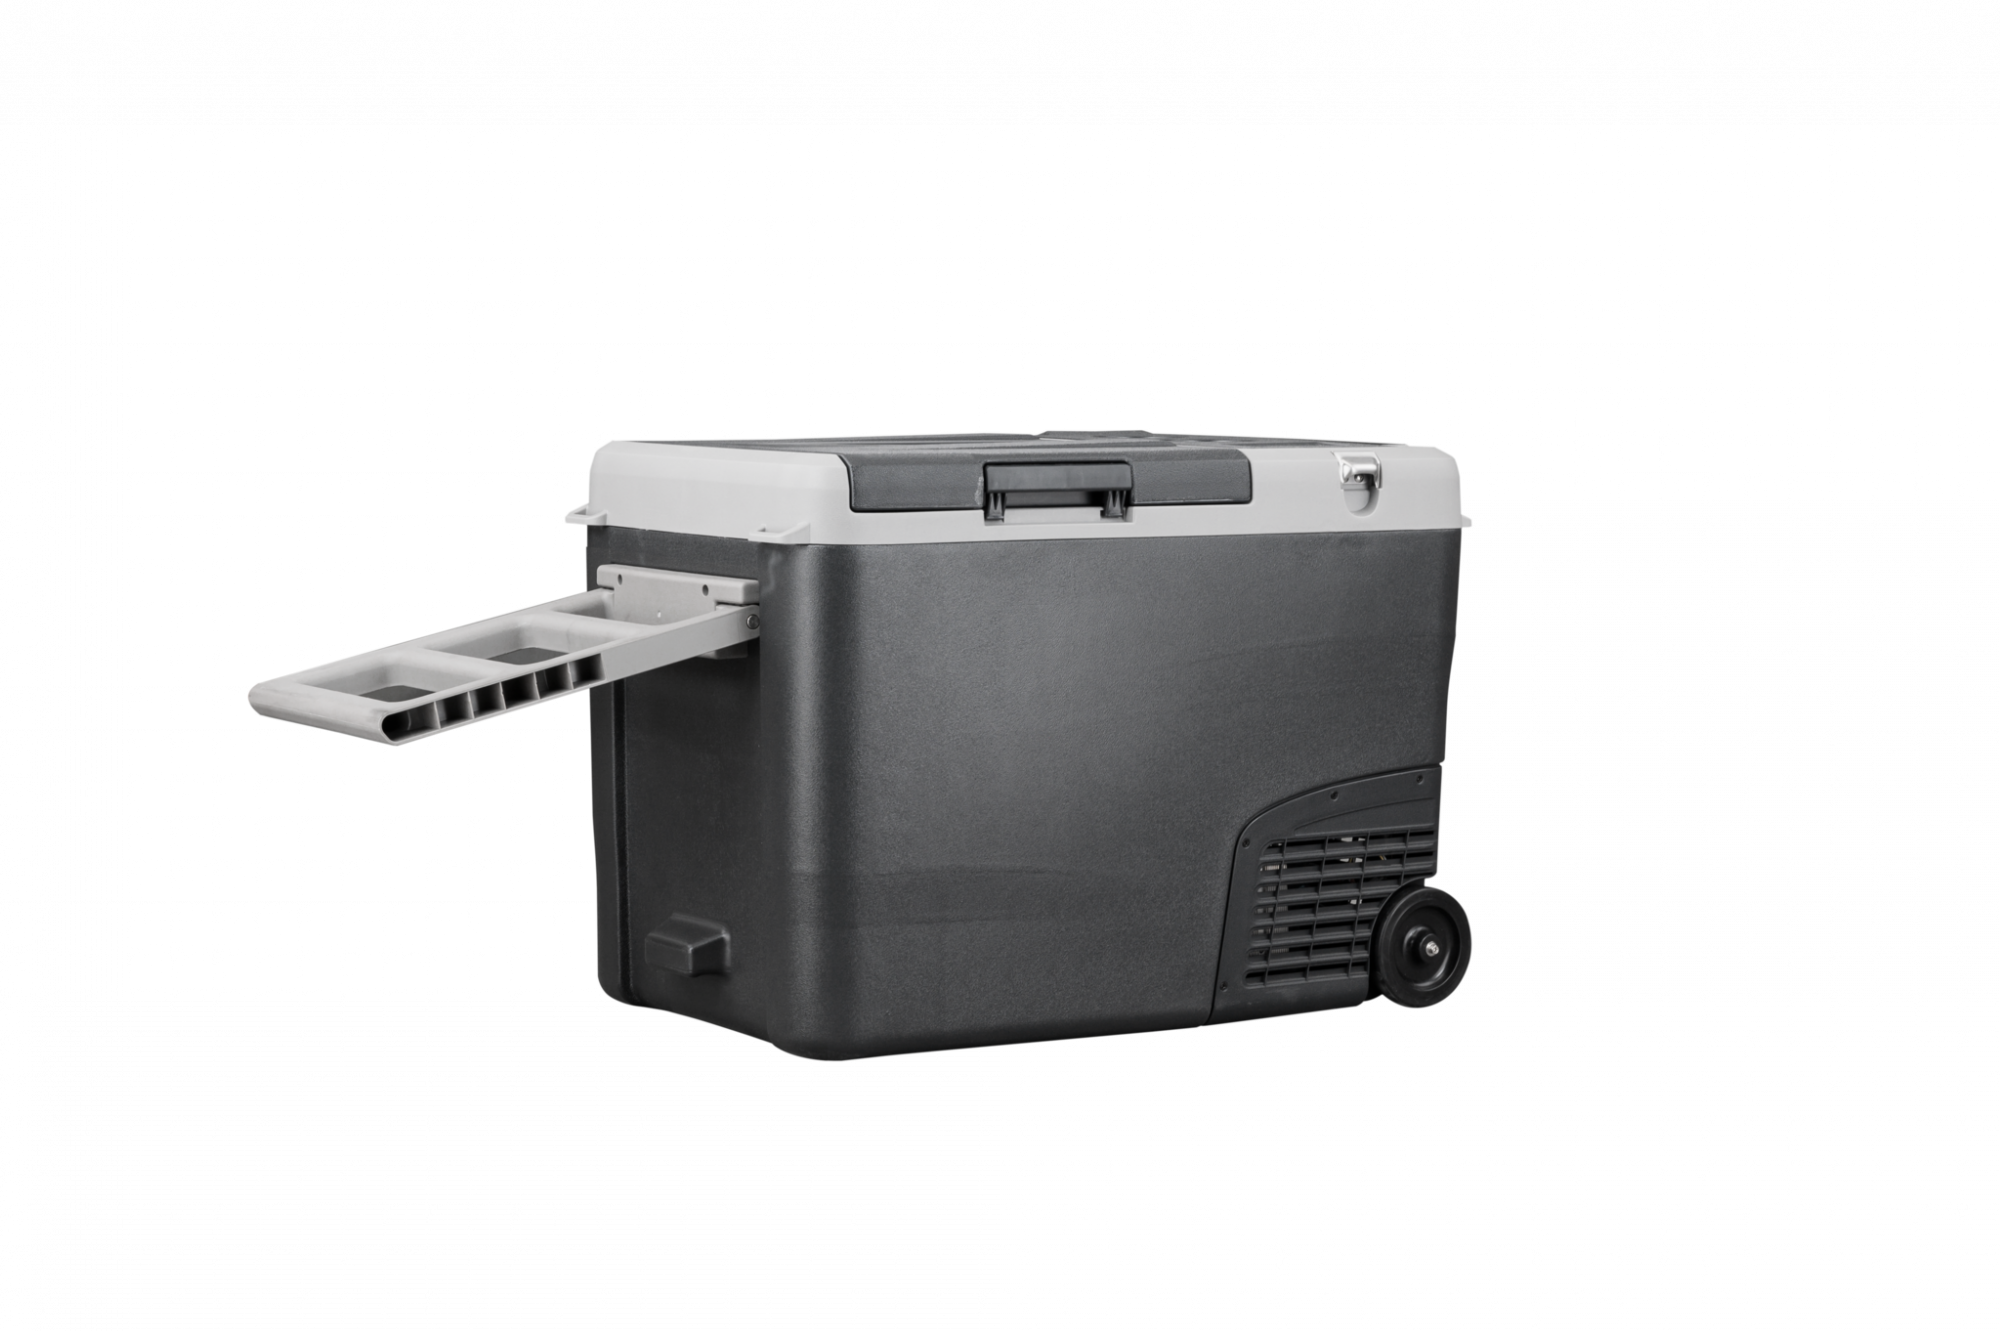 фото Холодильник MobileComfort MCF-40 портативный компрессорный 35.5 литров, до -20С, питание 12/24/220V